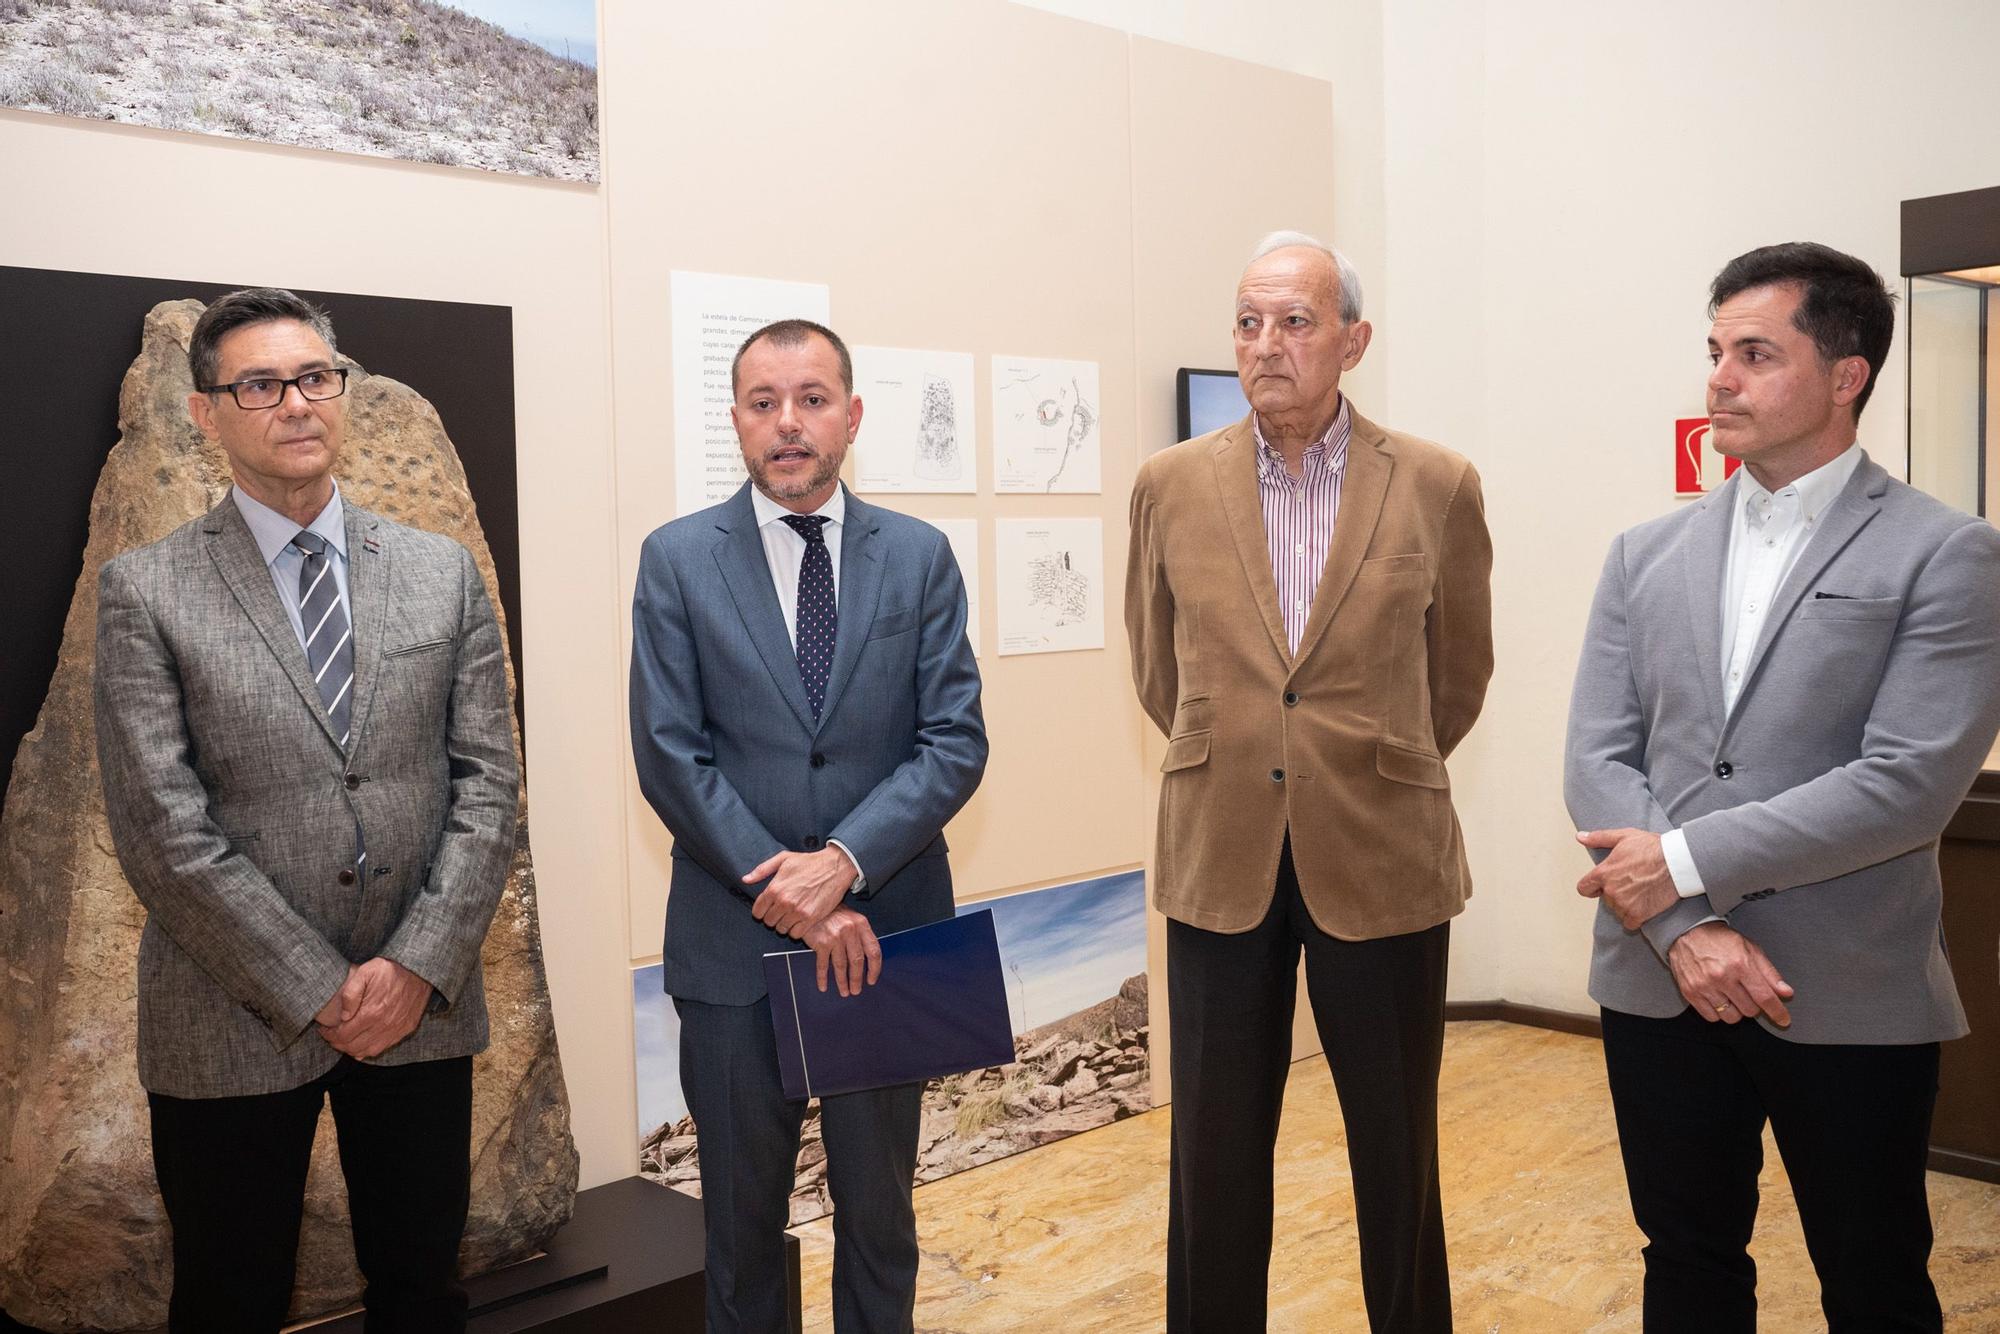 El Museo Canario incorpora piezas rupestres a la muestra permanente